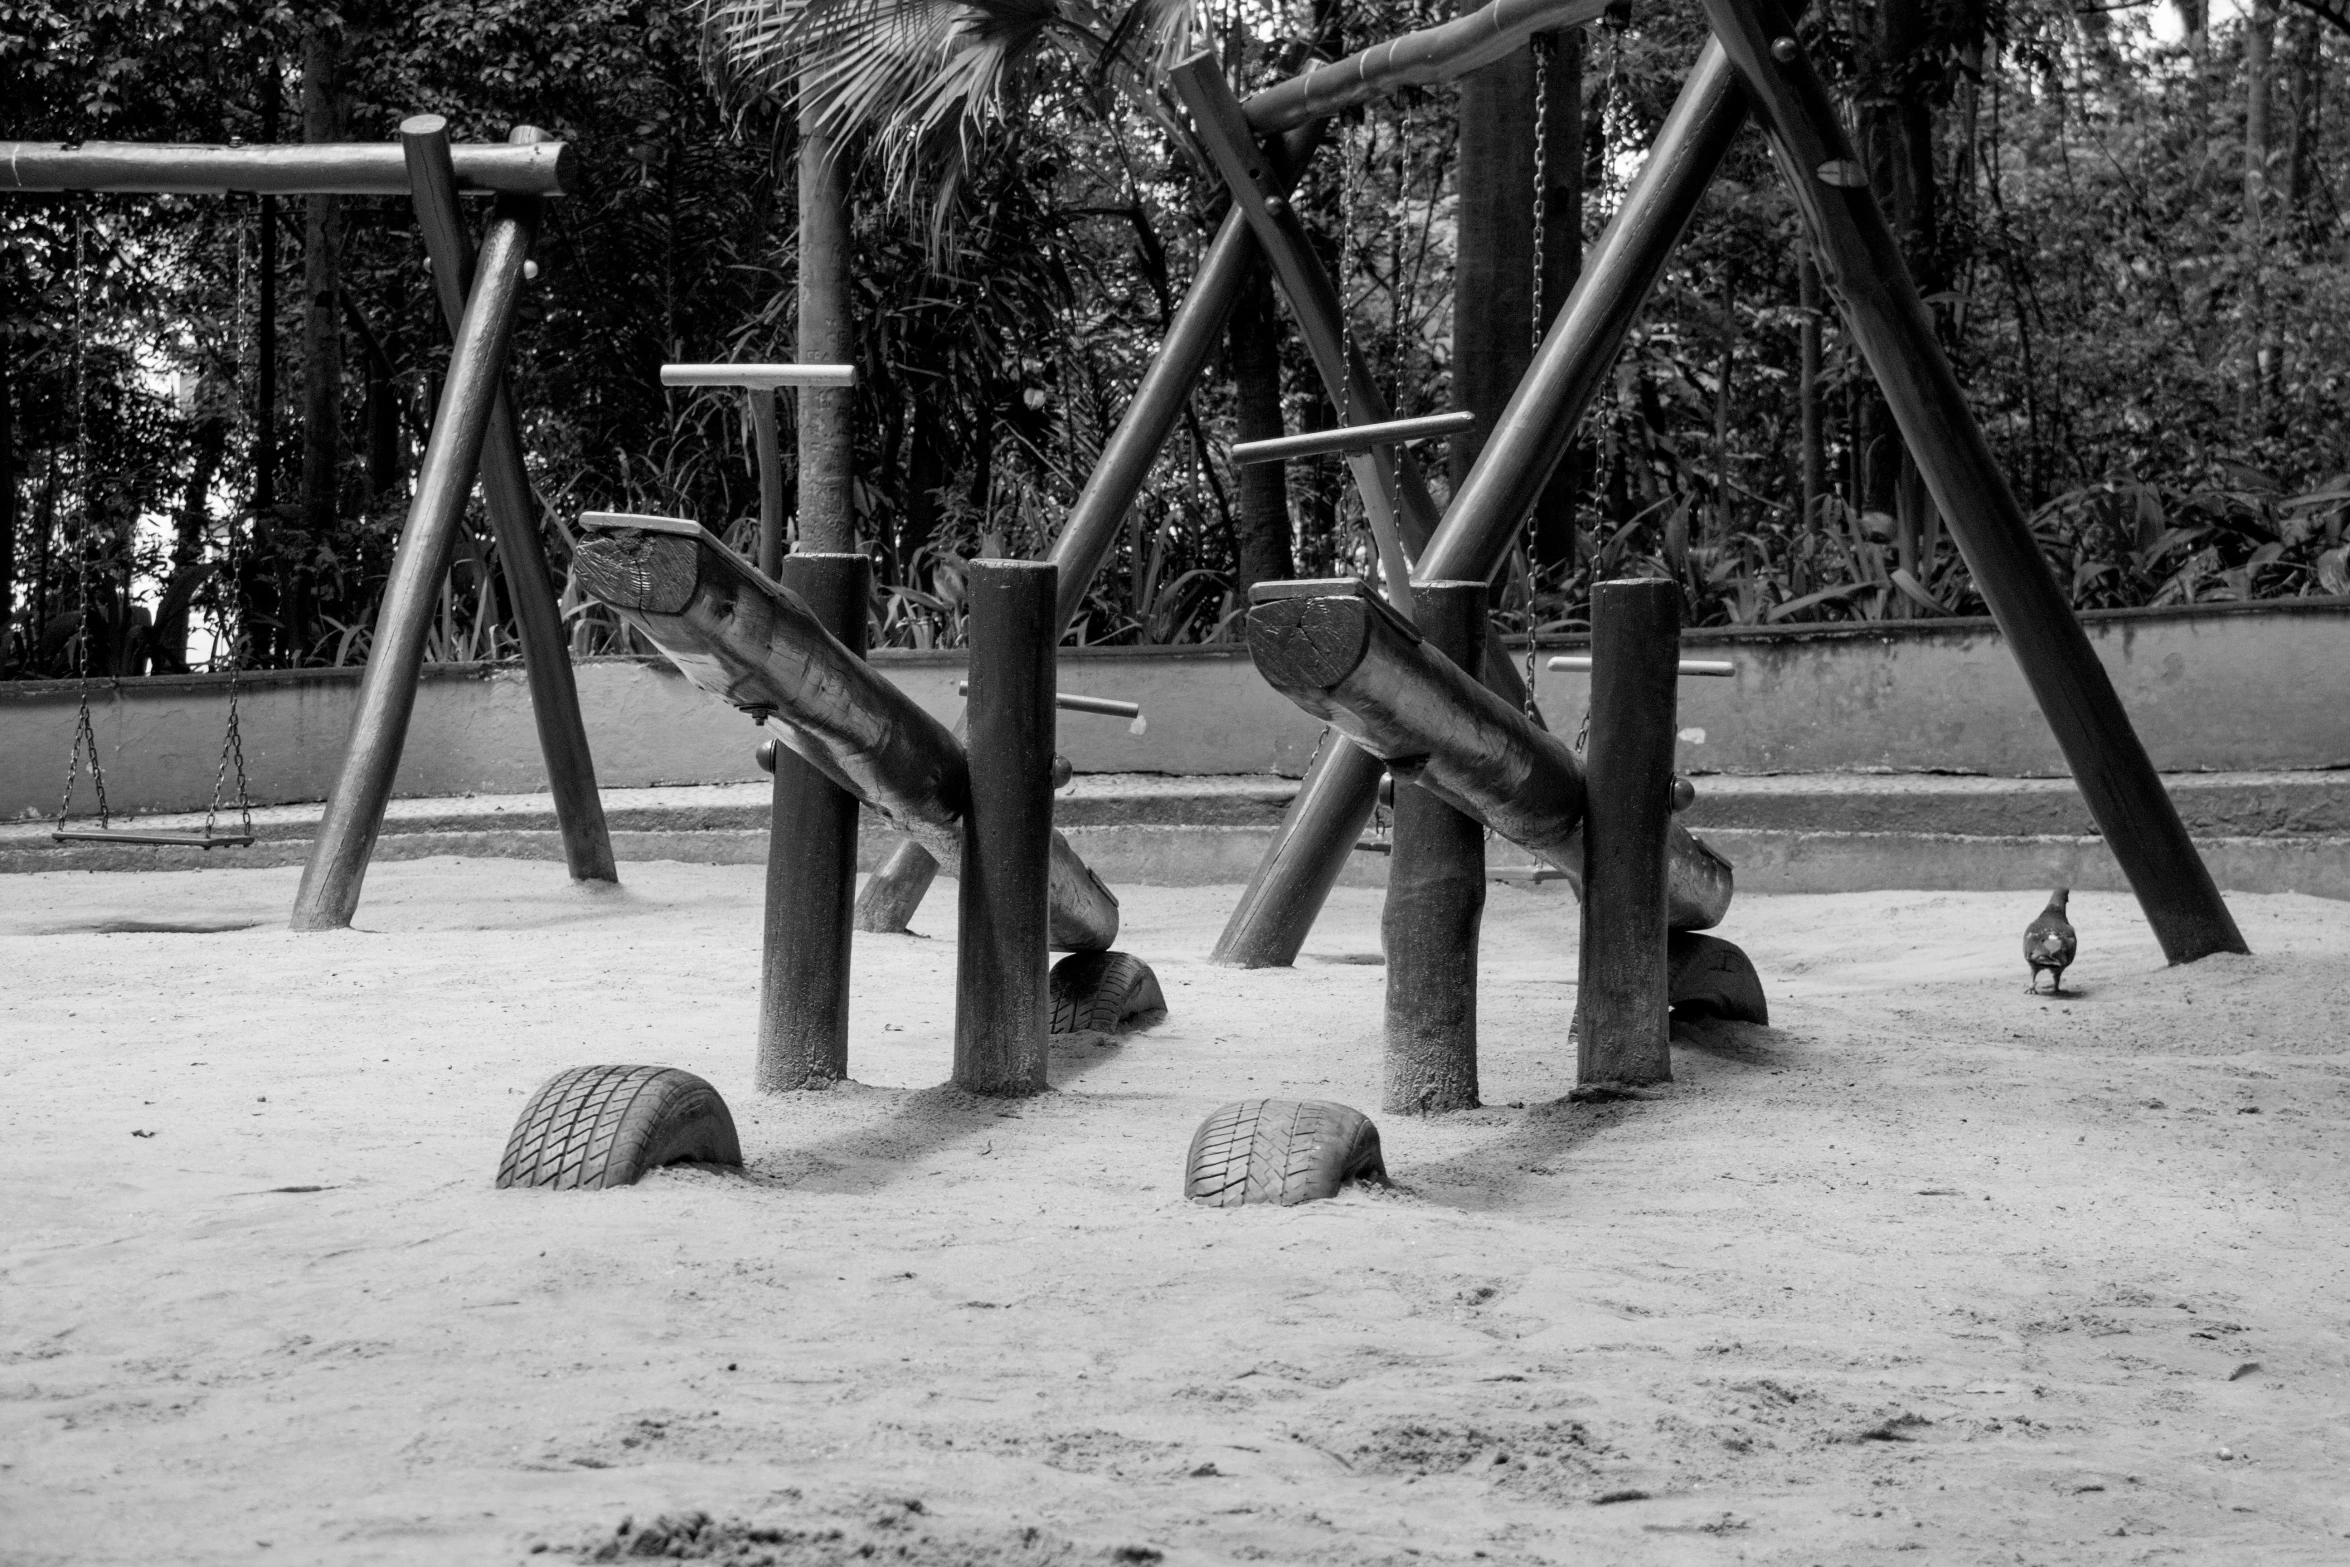 children's playground equipment in a sand yard